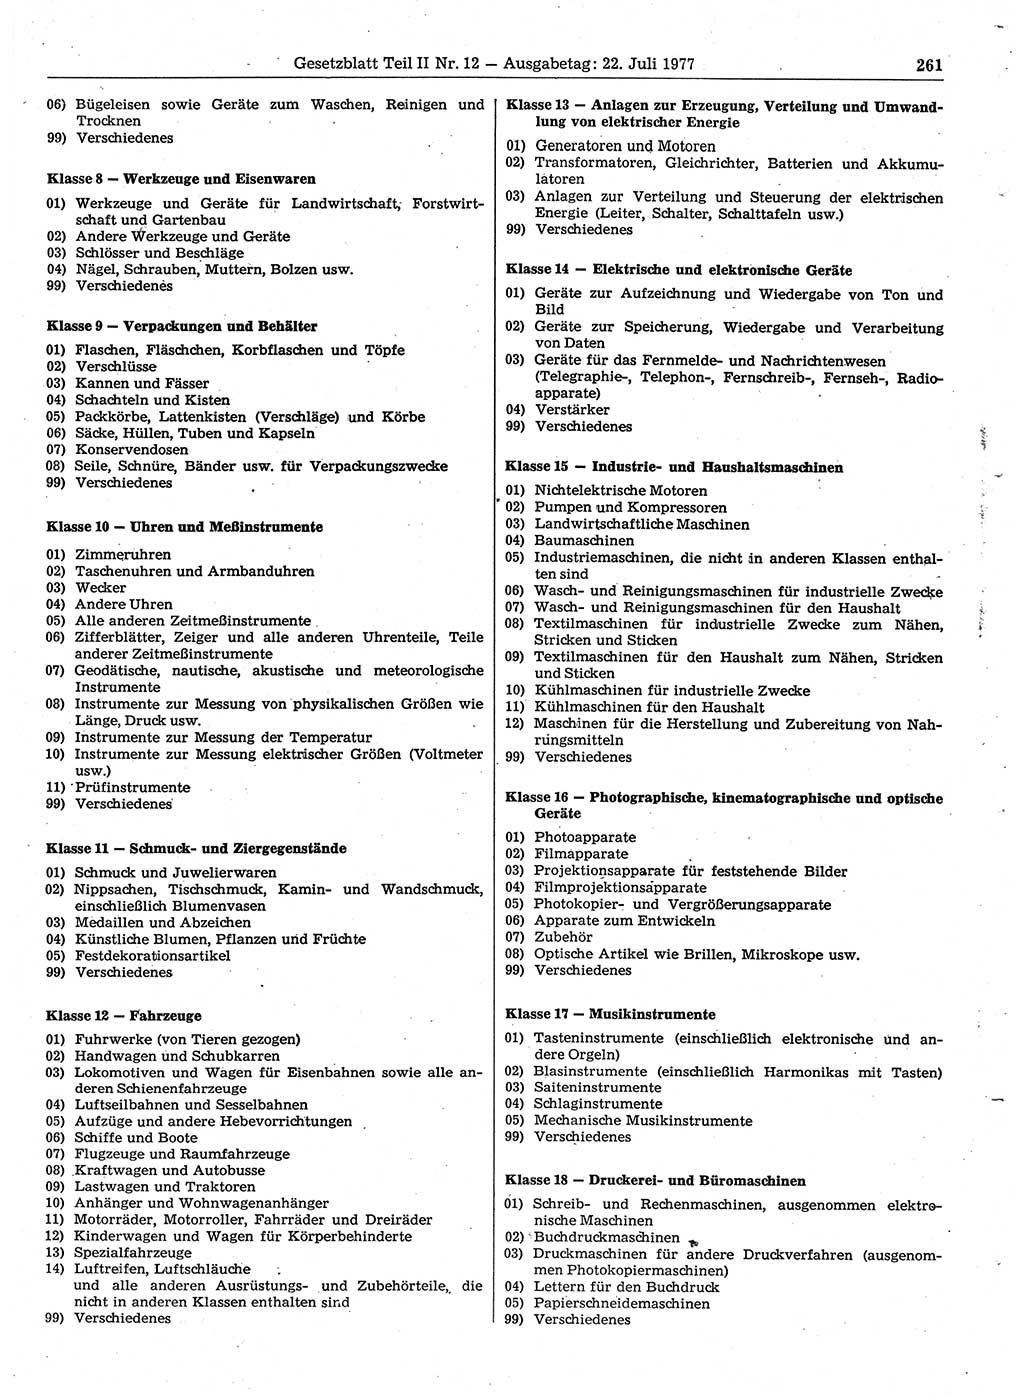 Gesetzblatt (GBl.) der Deutschen Demokratischen Republik (DDR) Teil ⅠⅠ 1977, Seite 261 (GBl. DDR ⅠⅠ 1977, S. 261)